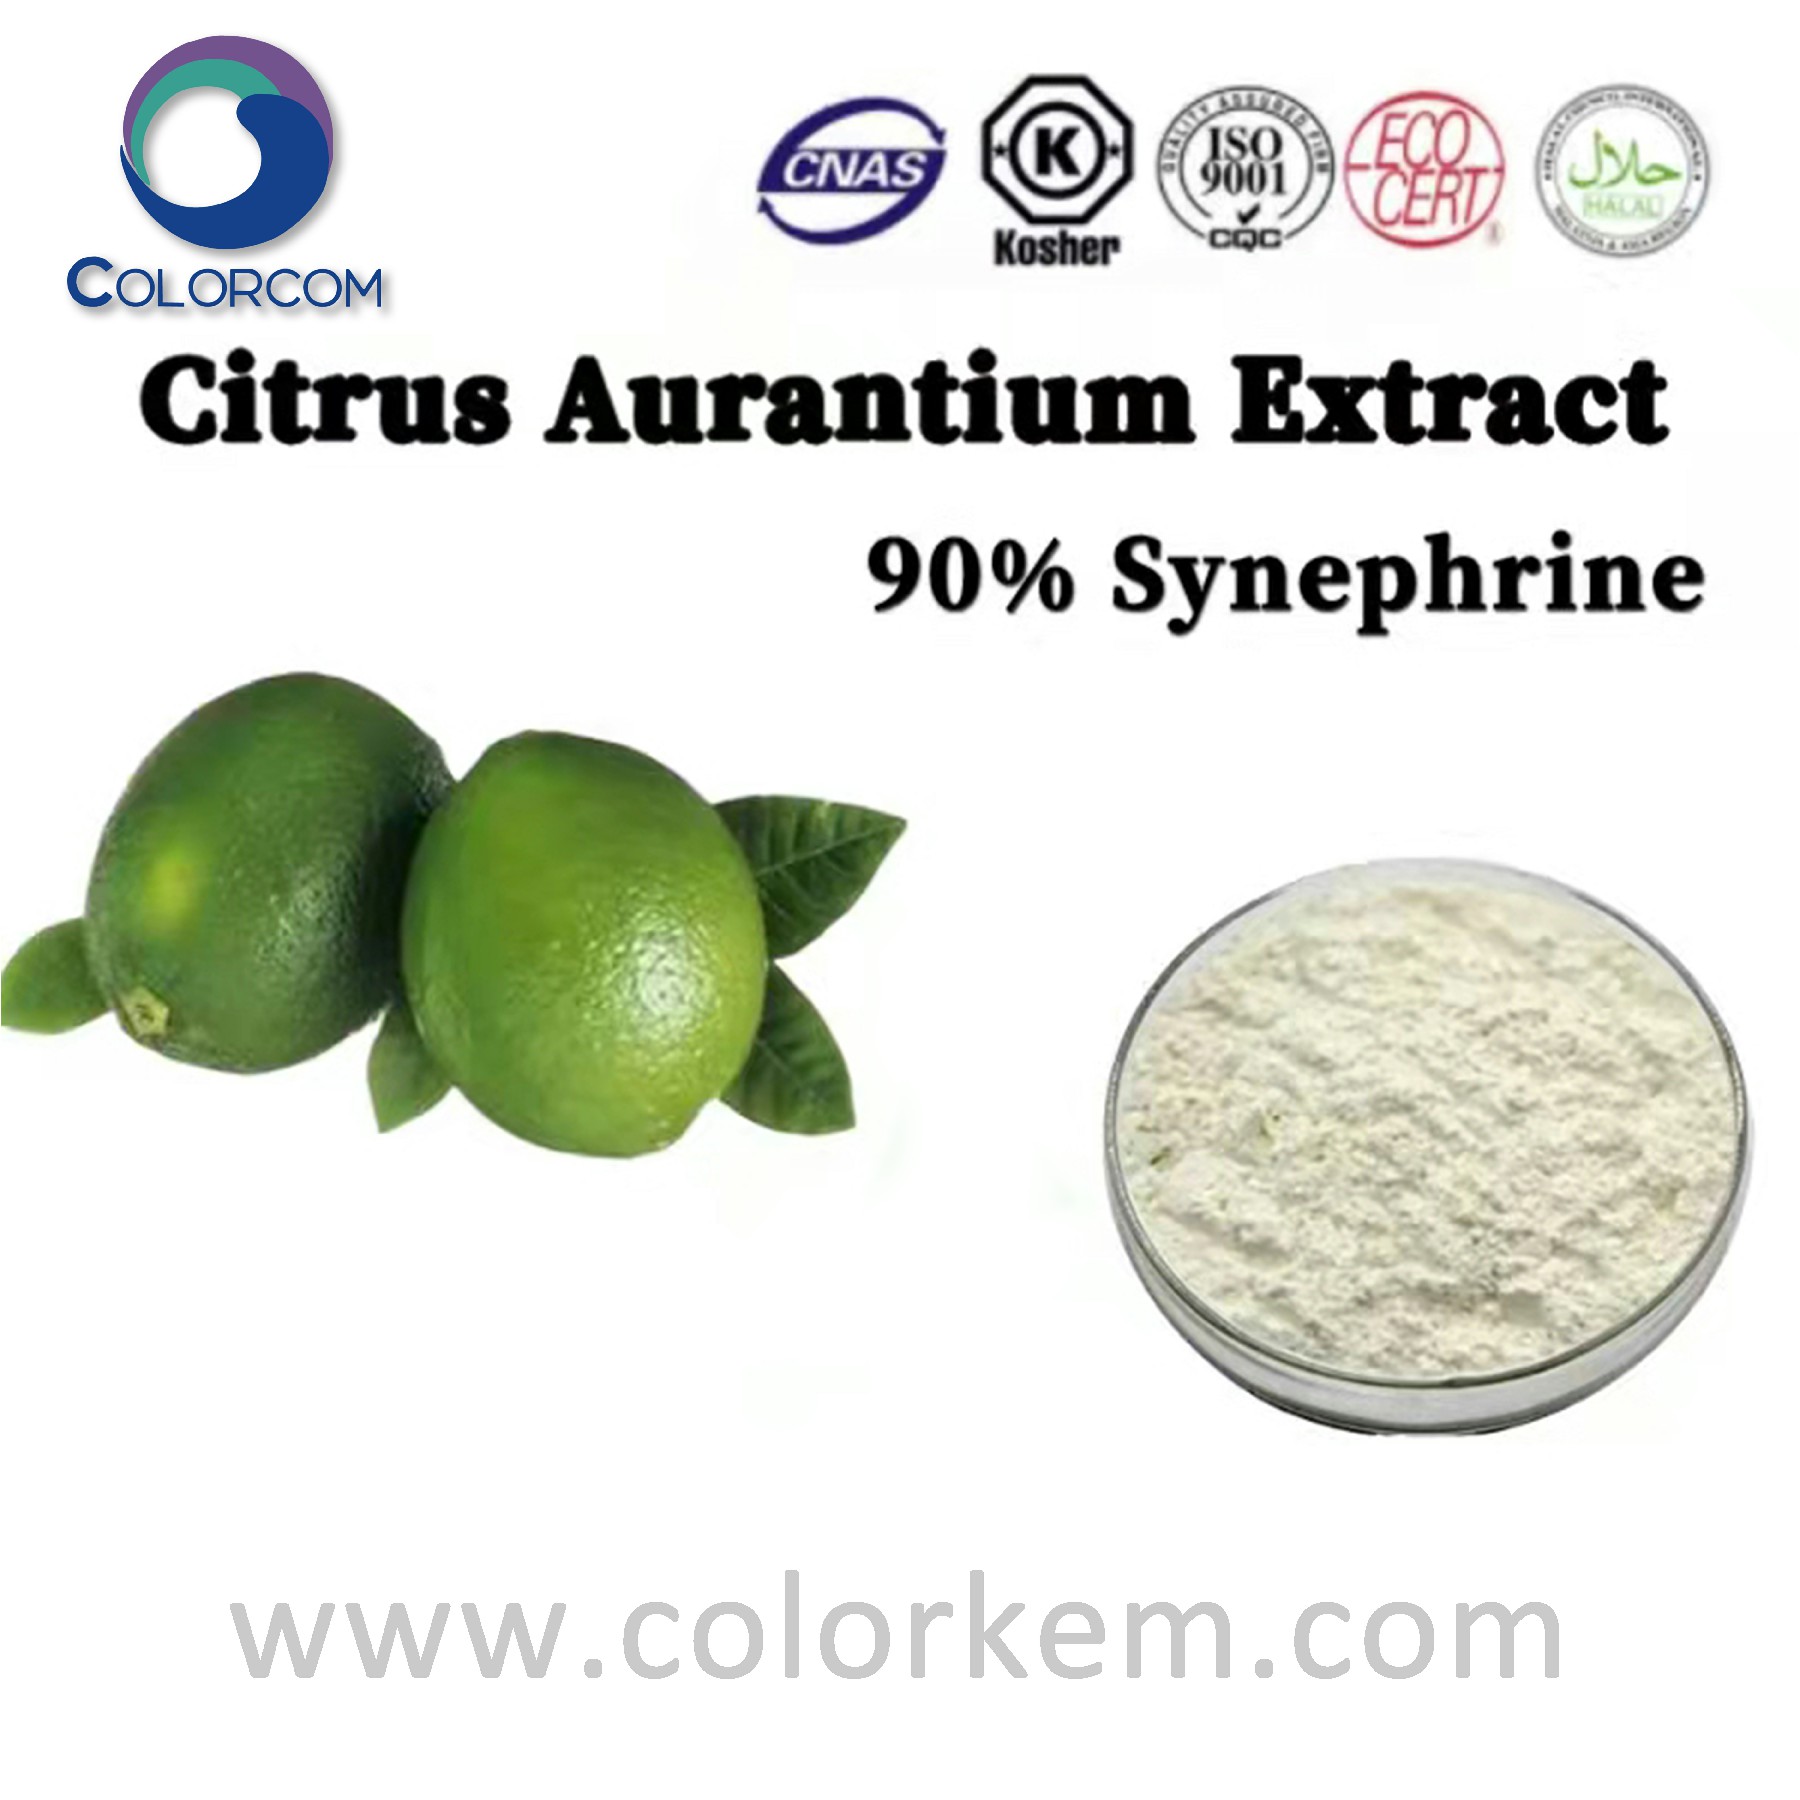 Citrus Aurantium Extract synephrine